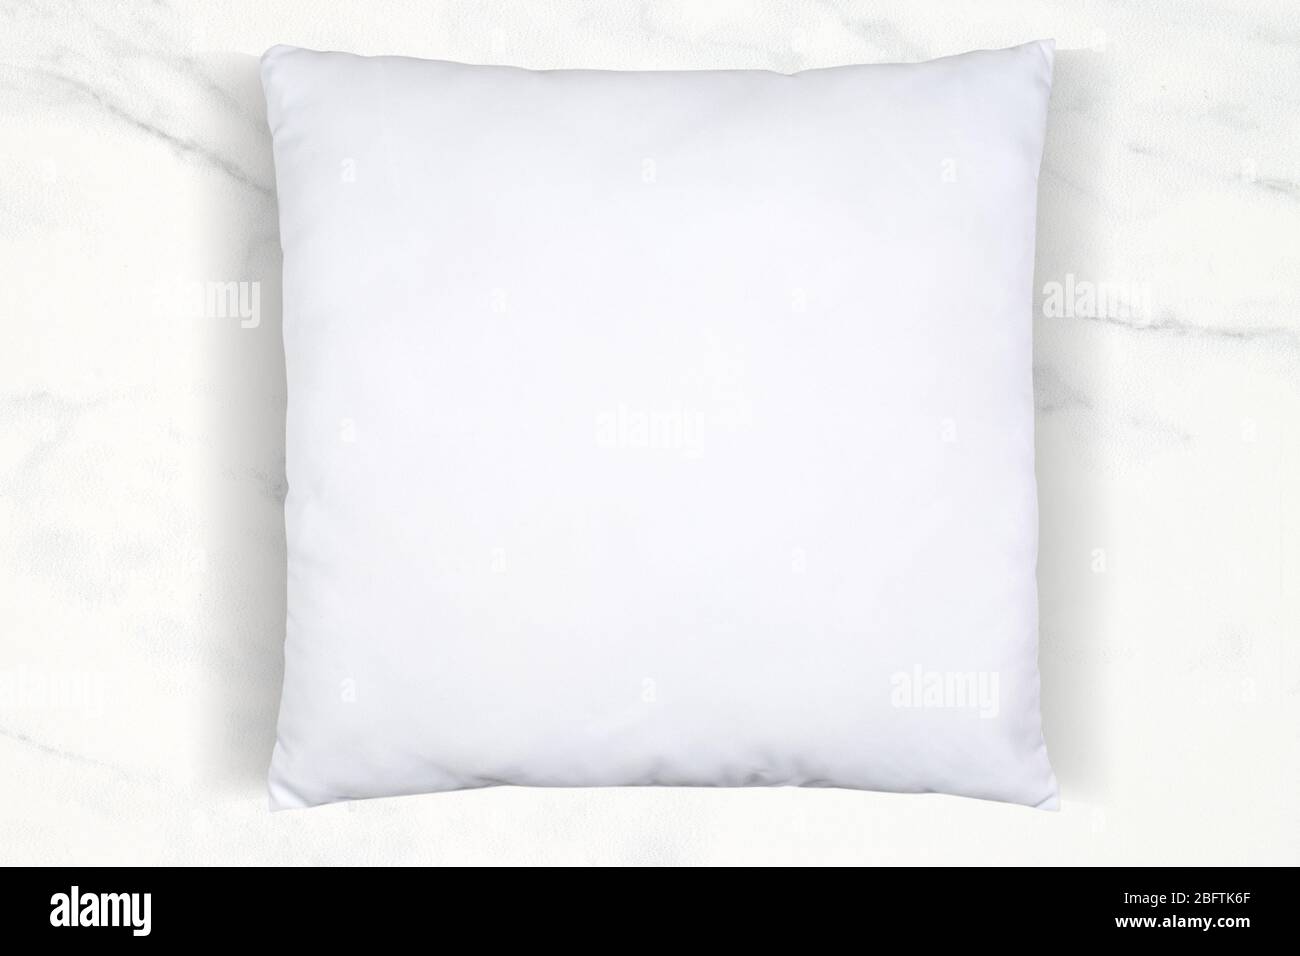 Ein weiches weißes Kissen mit Überwurf, das auf einem luxuriösen weißen Marmorhintergrund chillend ist. Viel Platz für Ihr eigenes Design in diesem Stehkragen mit Kissen. Stockfoto